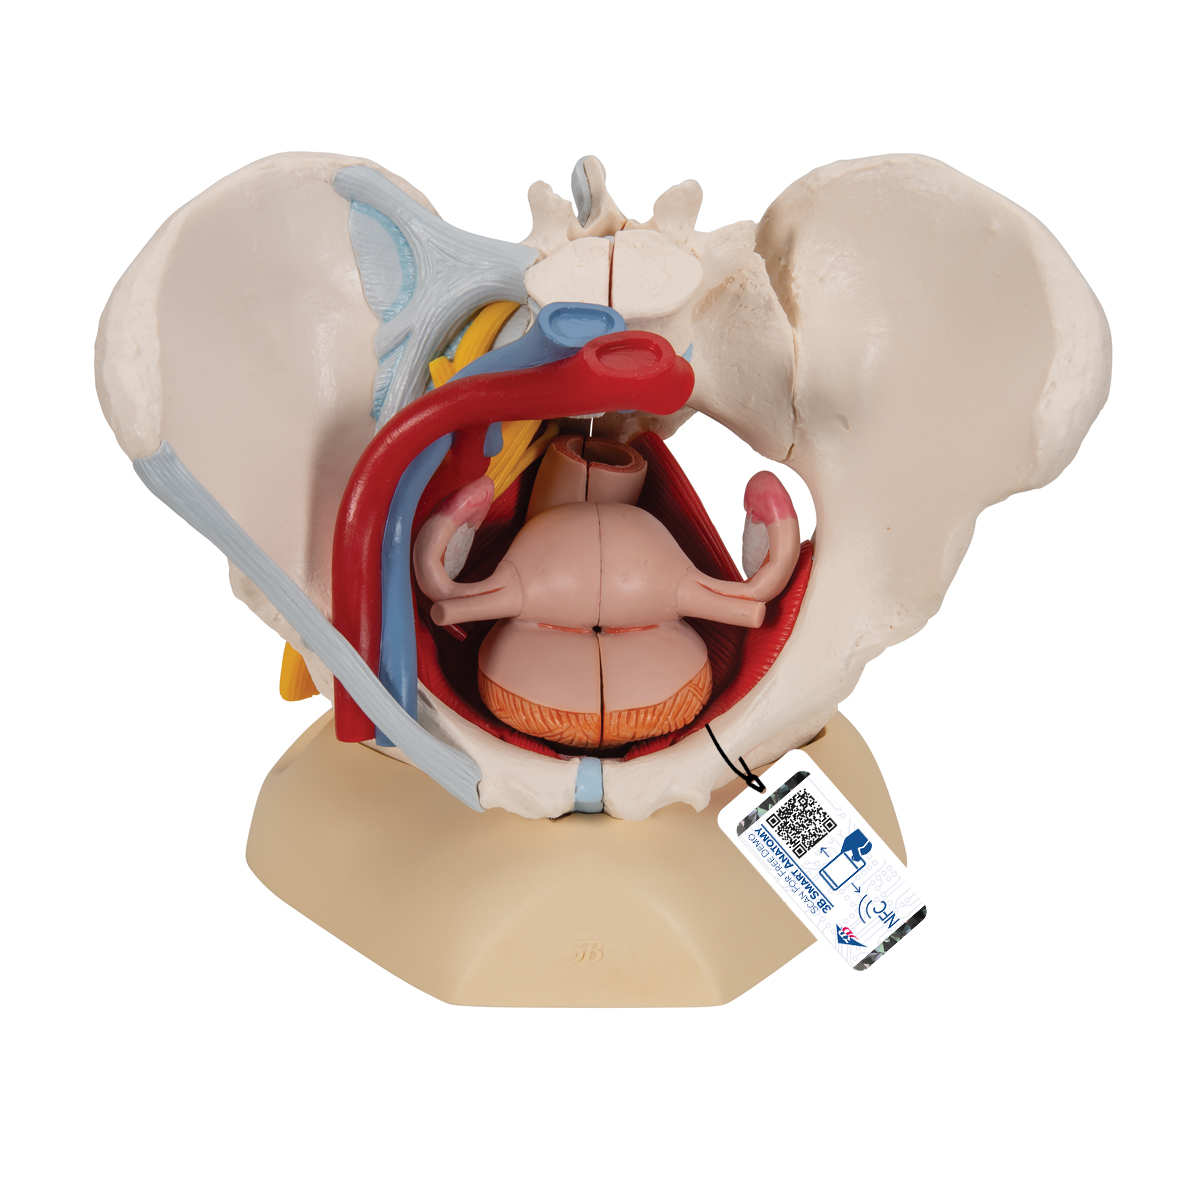 Weibliches Becken Modell mit Bändern, Gefäßen, Nerven, Beckenboden & Organen, 6-teilig - 3B Smart Anatomy, Bestellnummer 1000288, H20/4, 3B Scientific